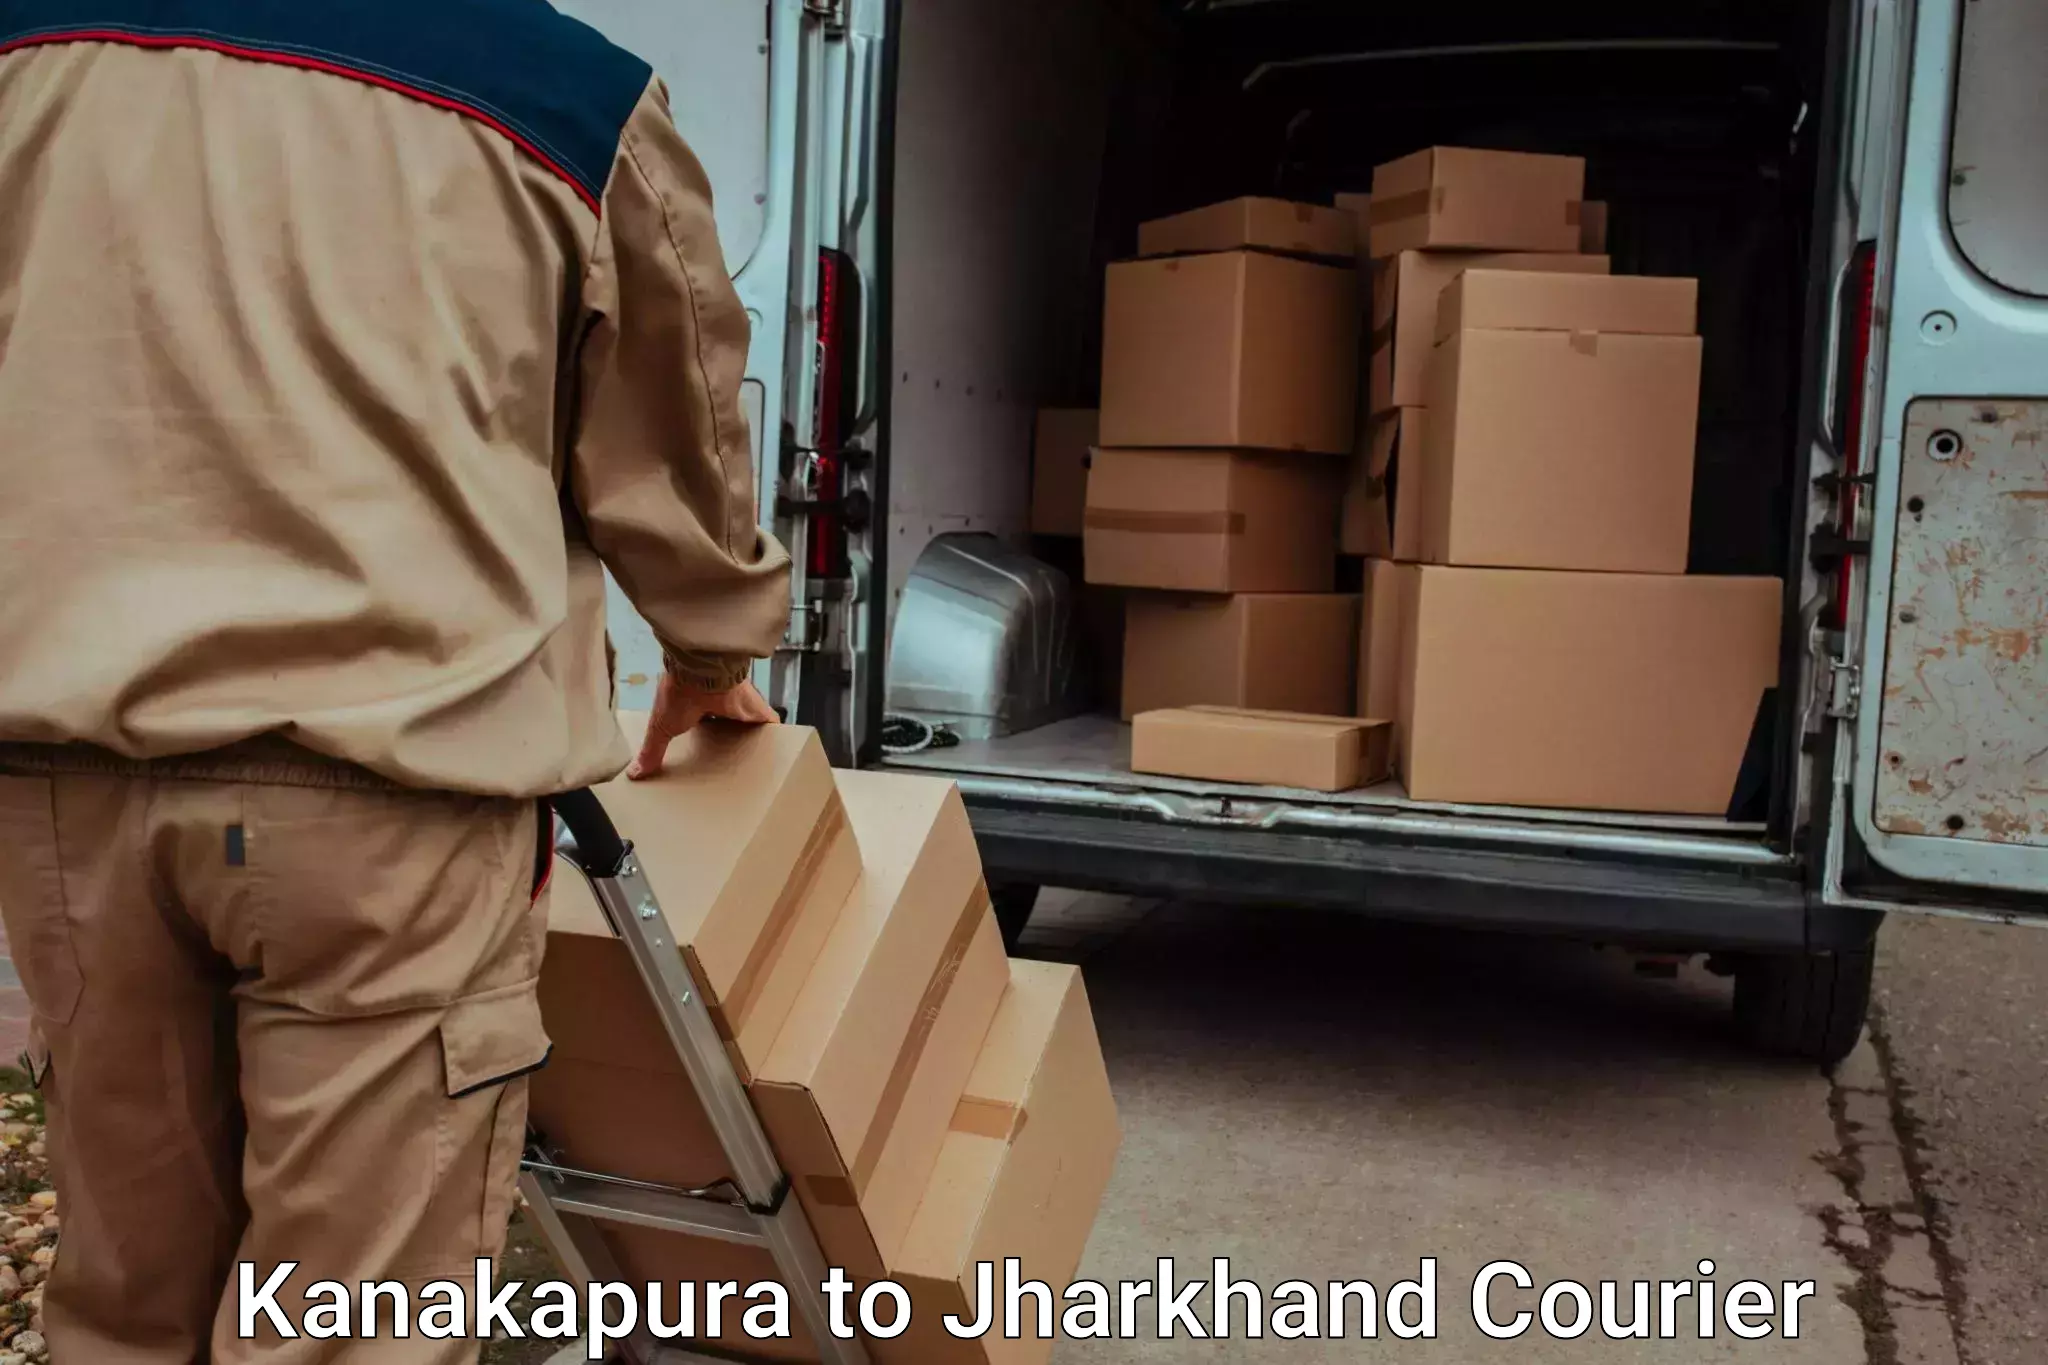 Trusted moving company Kanakapura to Jharkhand